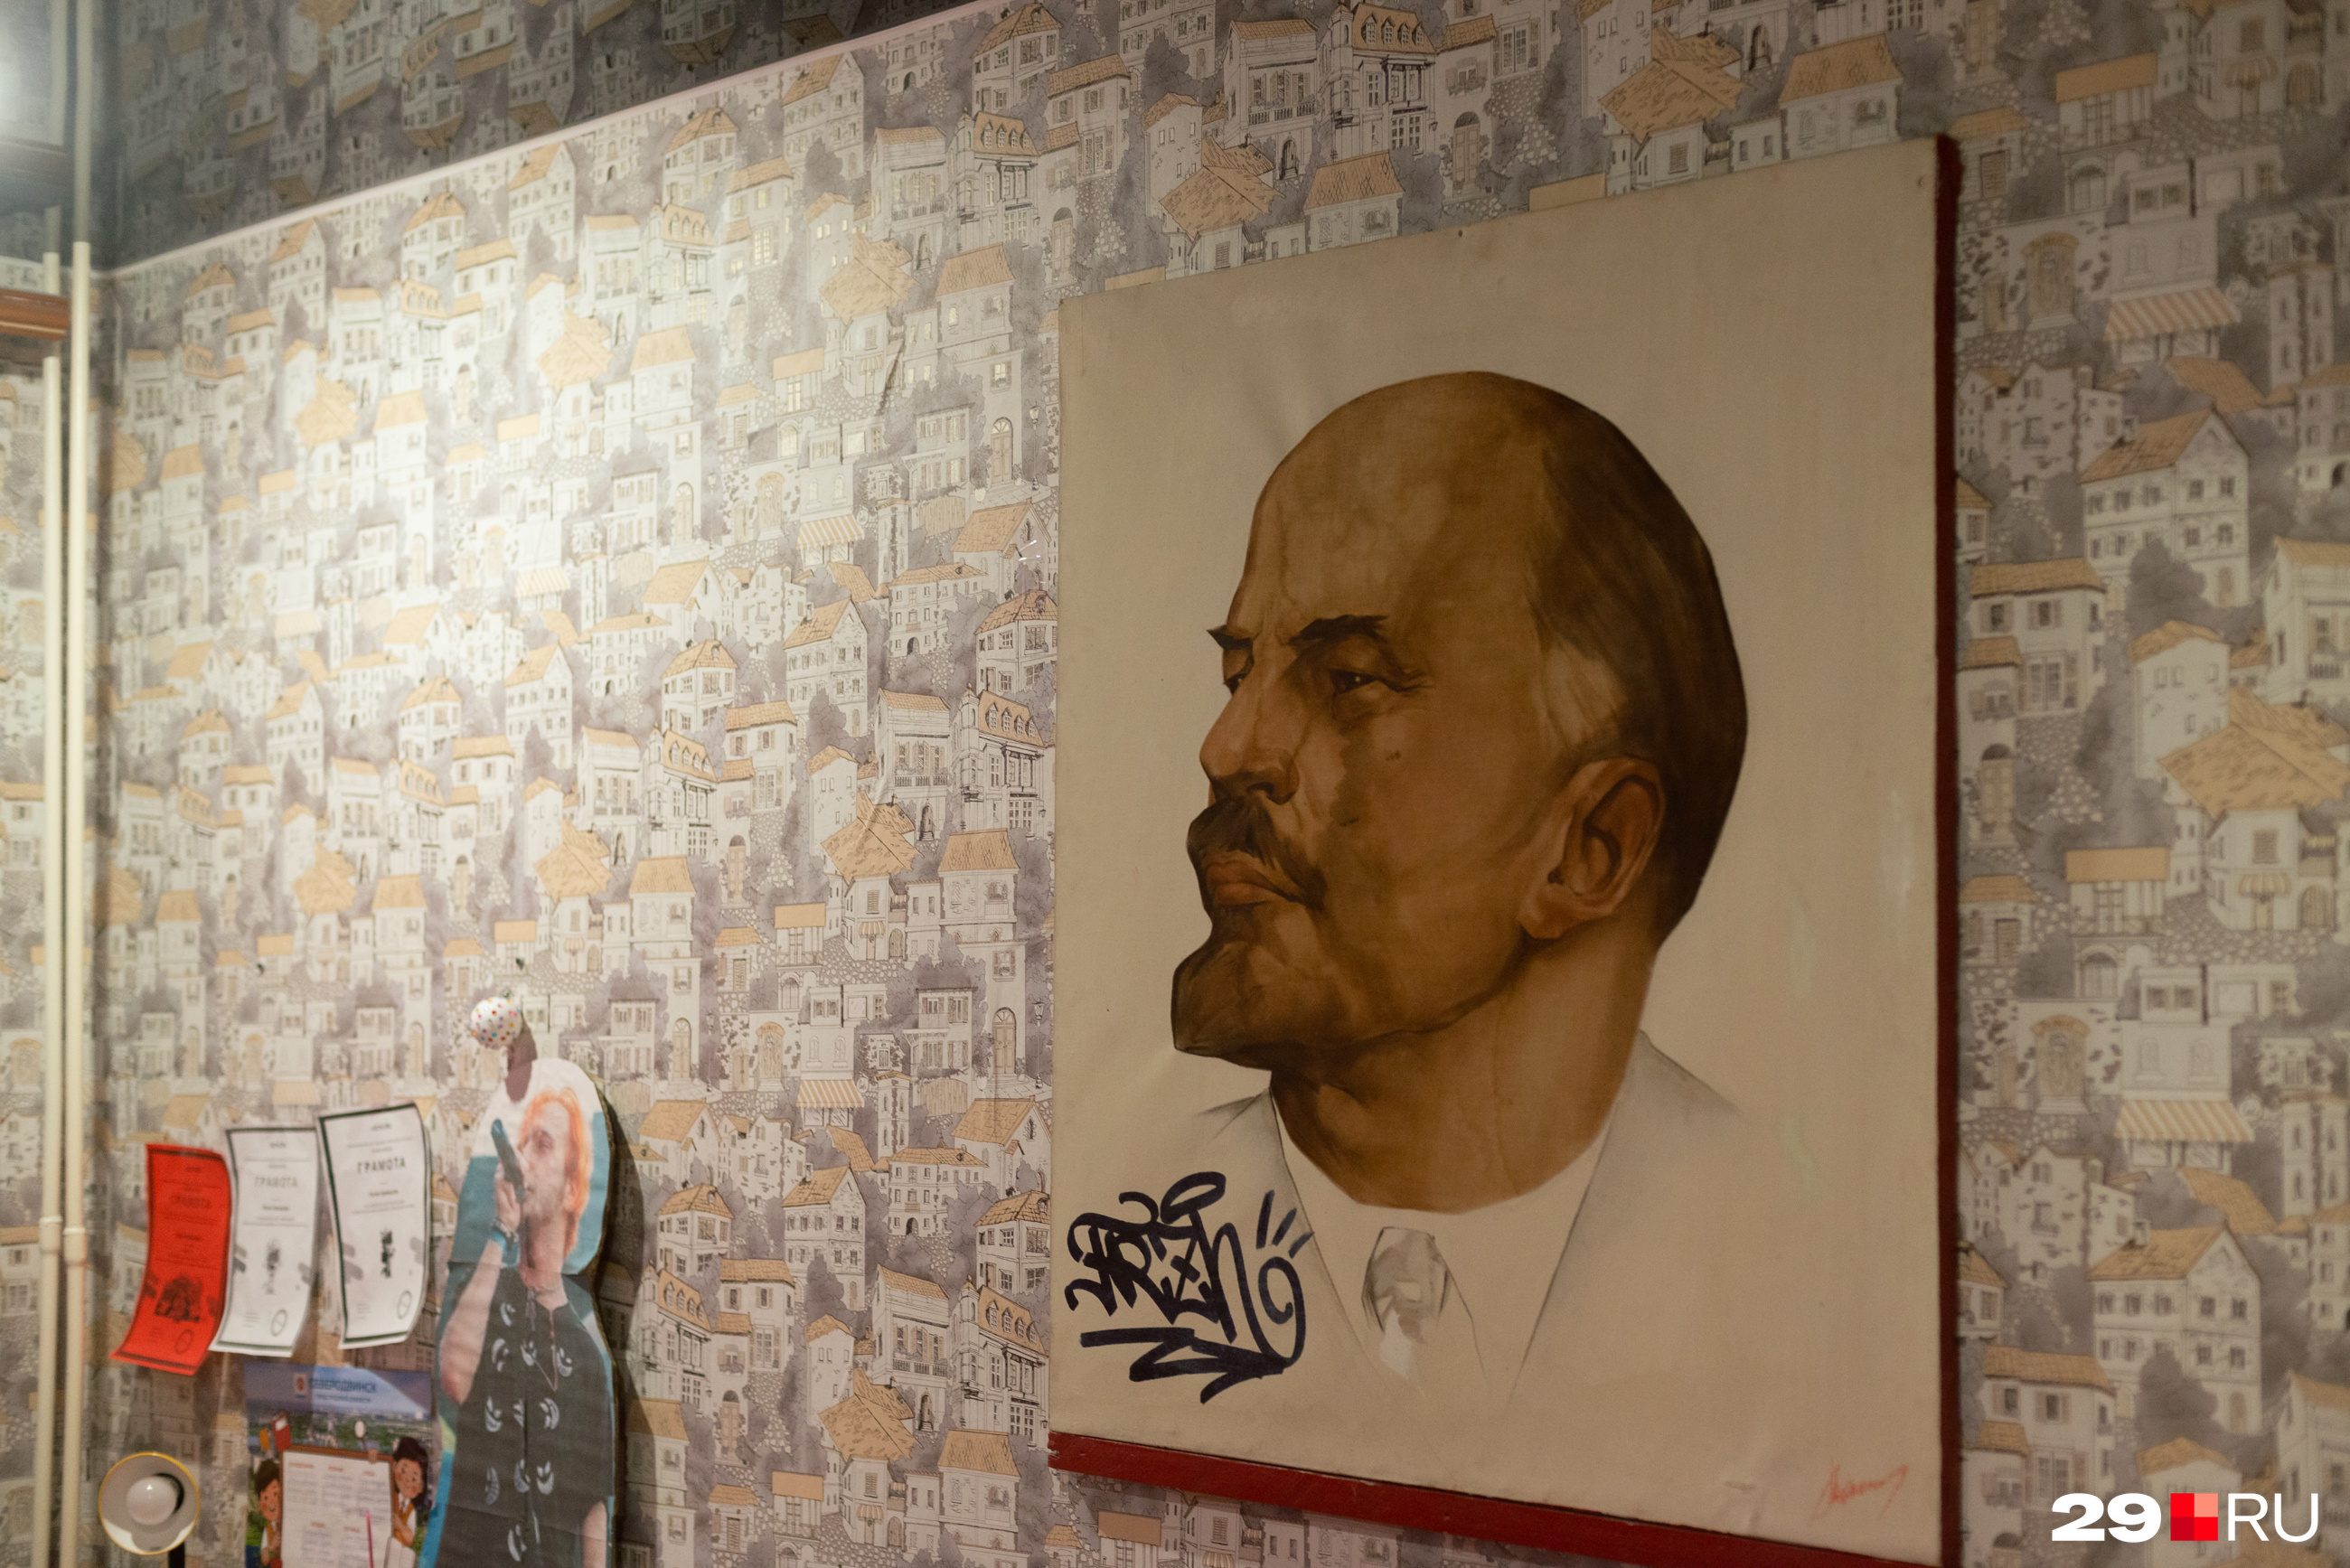 В комнате Олеси рядом с картонным рэпером висит портрет Ленина